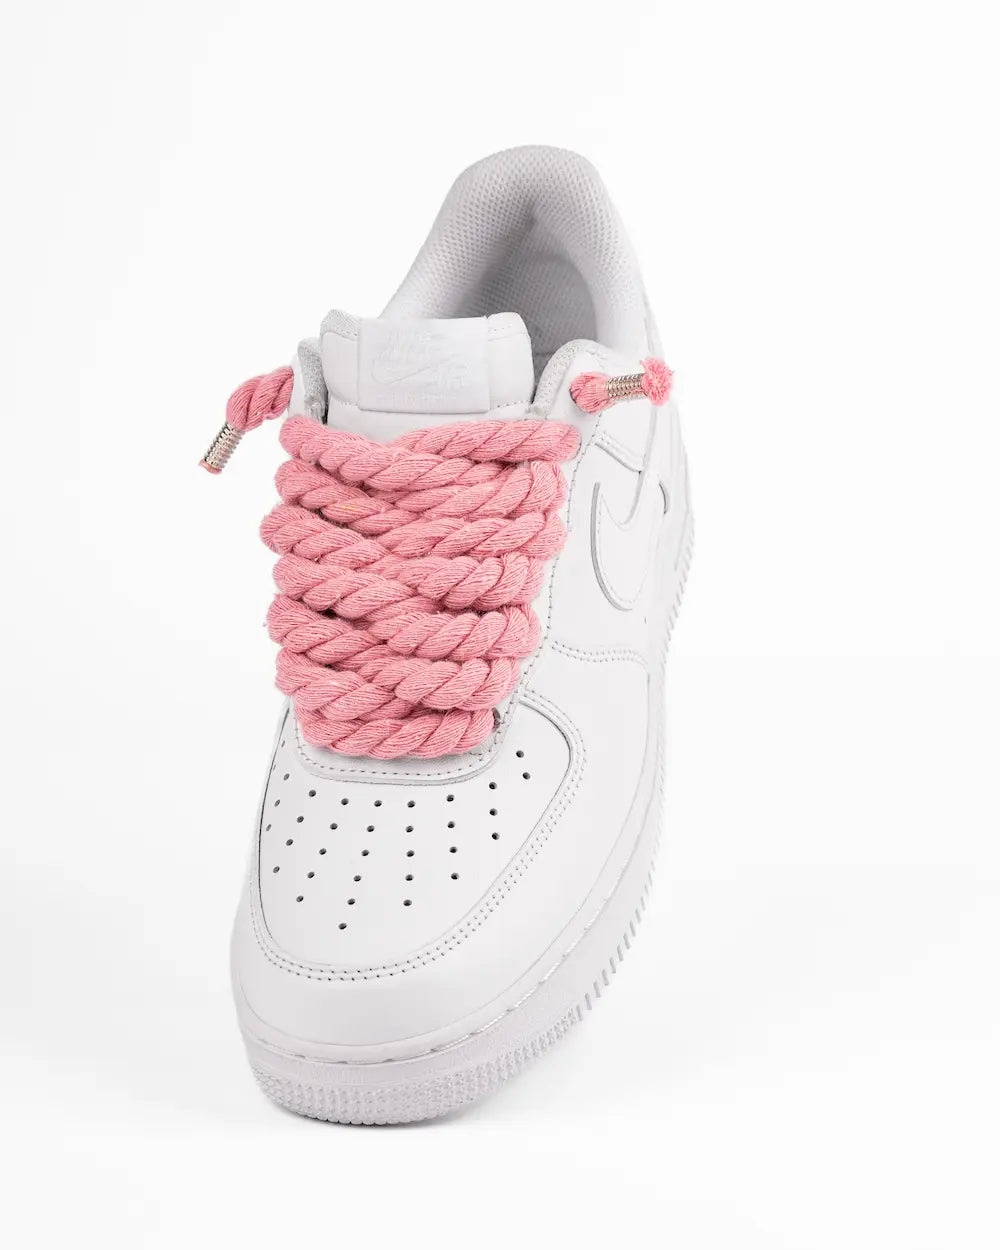 Nike Air Force 1 bianca personalizzata con lacci in corda rosa pastello